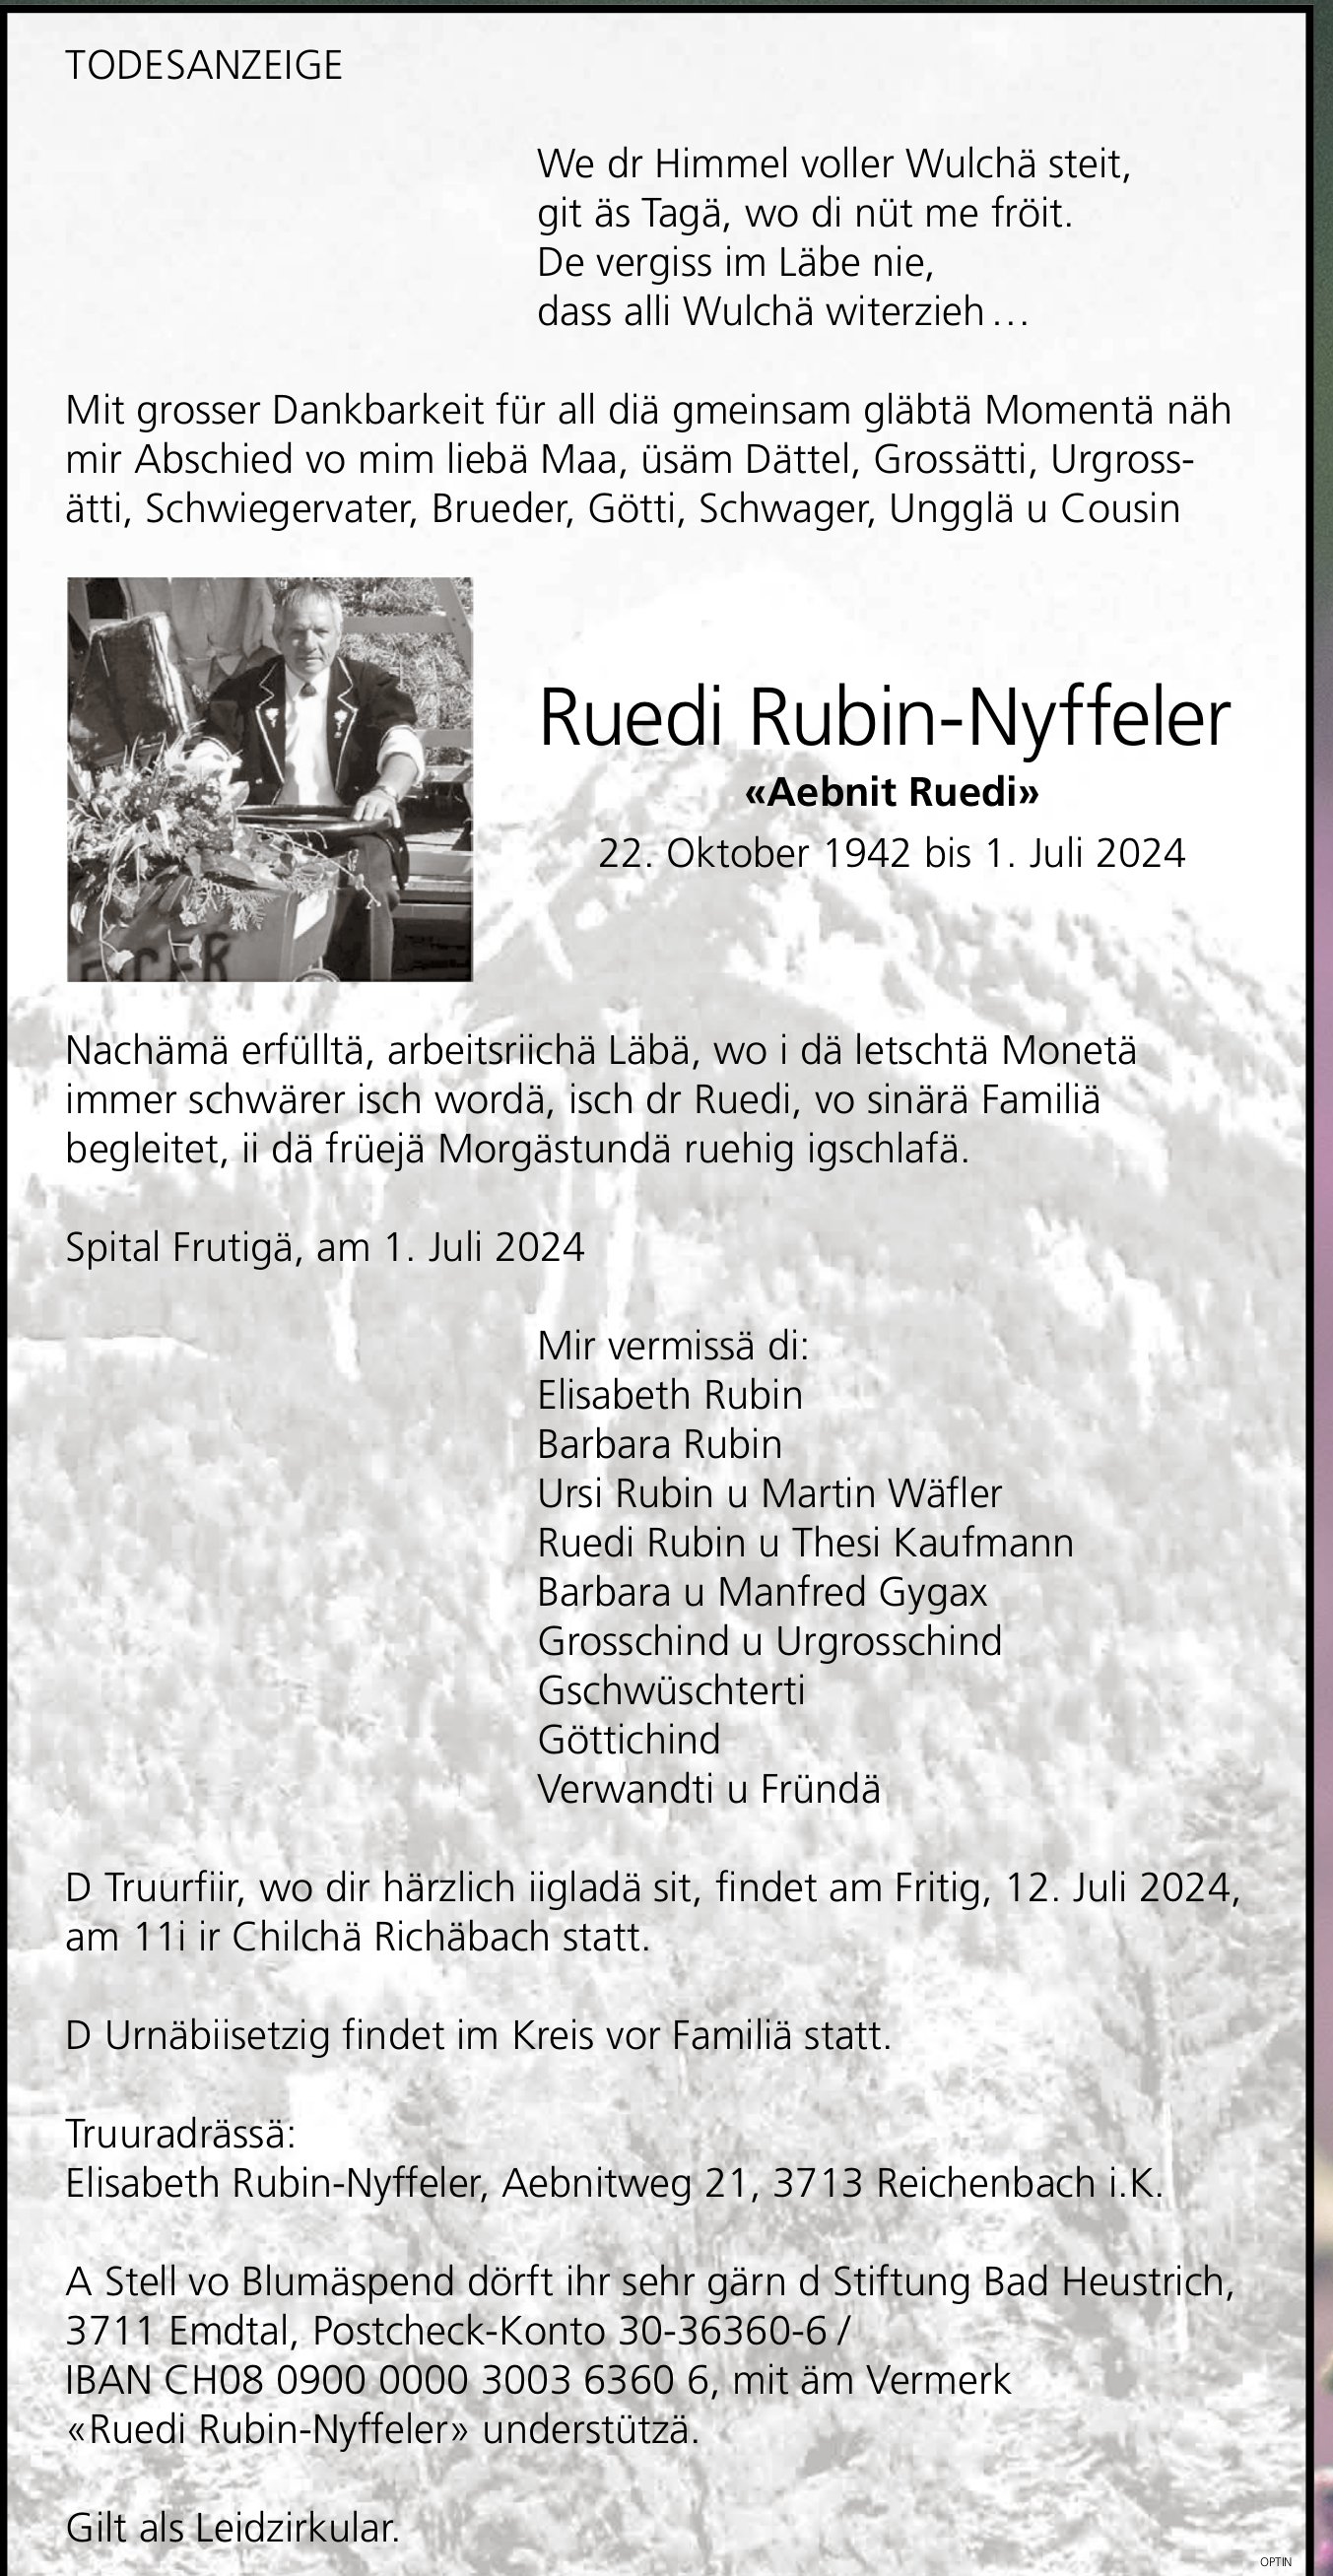 Ruedi Rubin-Nyffeler, Juli 2024 / TA